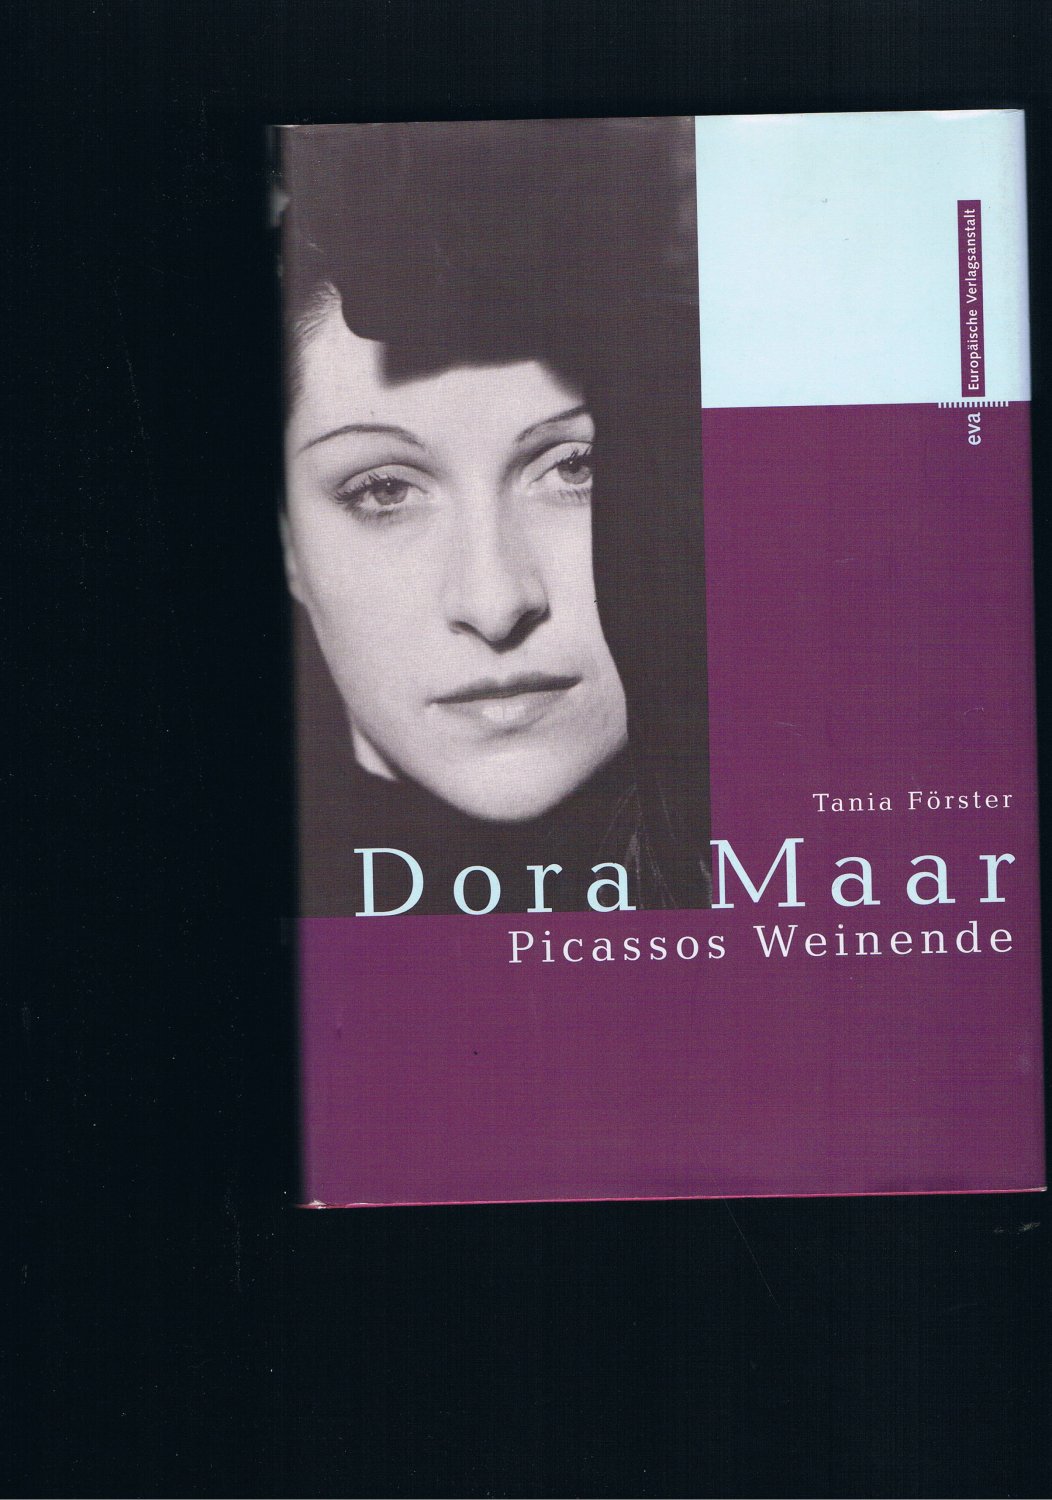 Dora Maar Picassos weinende - Tania Förster